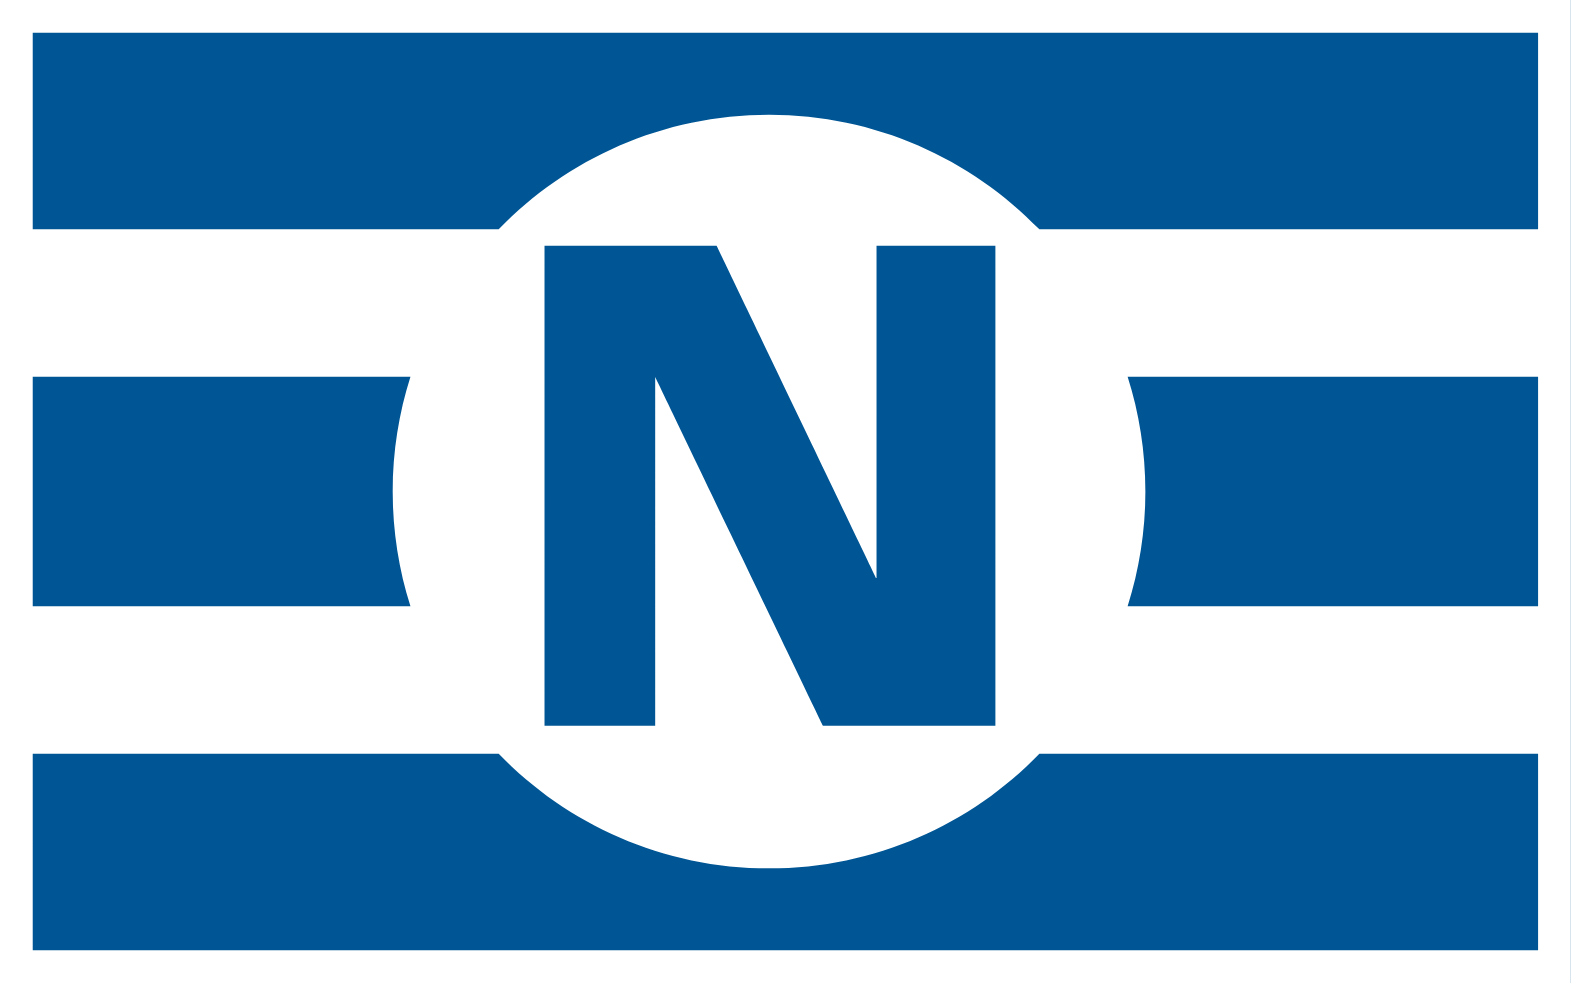 Navios Maritime Partners logo (PNG transparent)